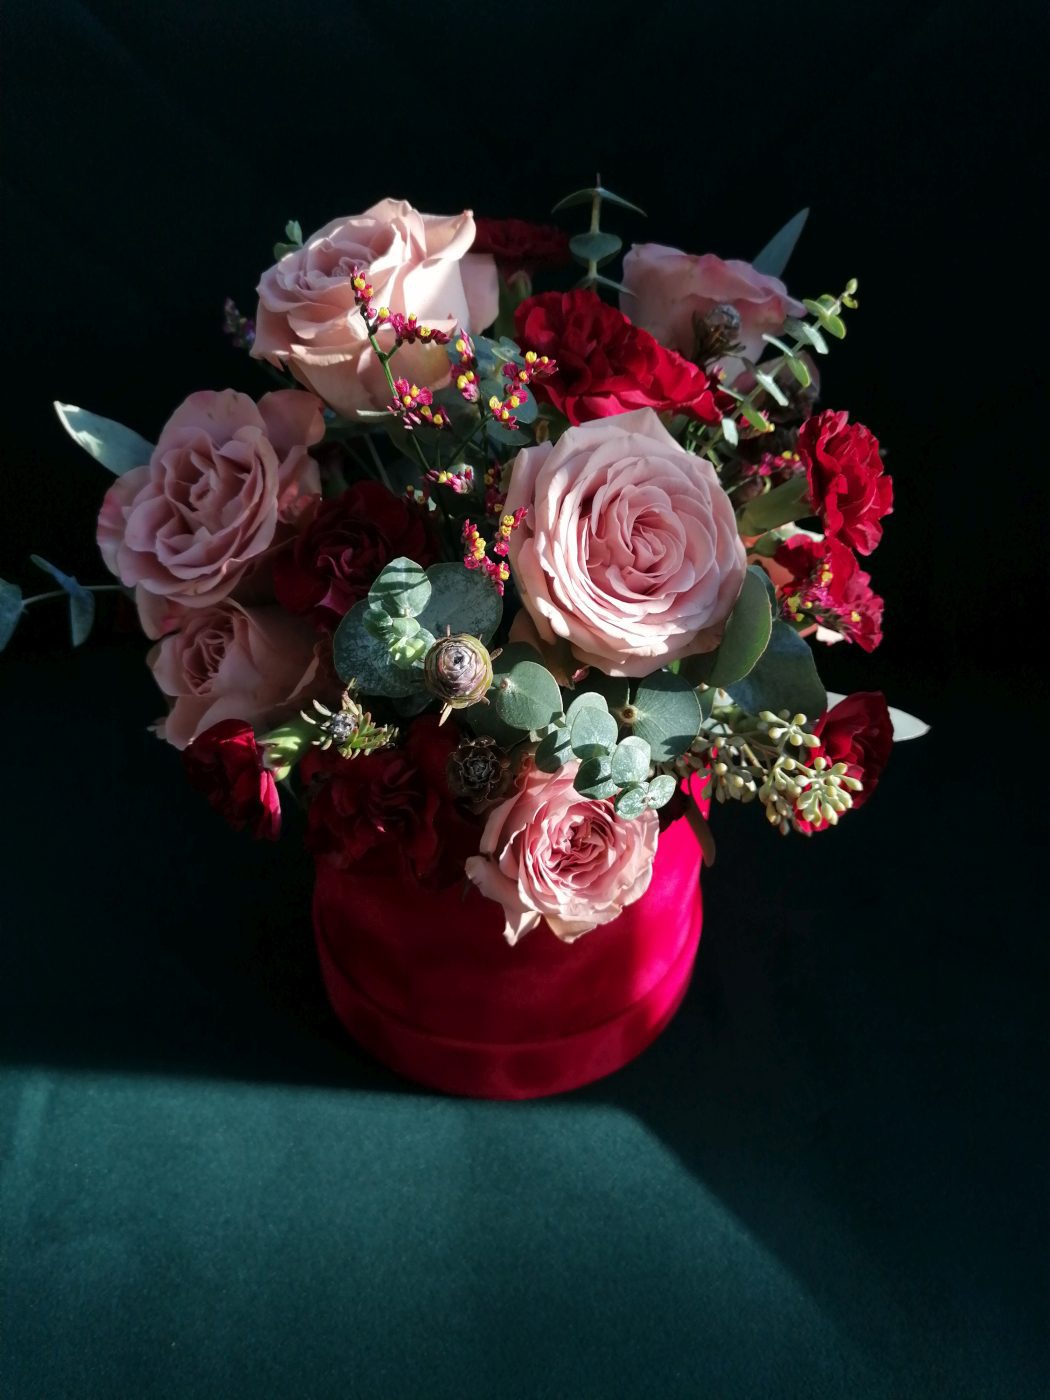 М'який відтінок бежевих троянд контрастує з червоним кольором гвоздик і коробки